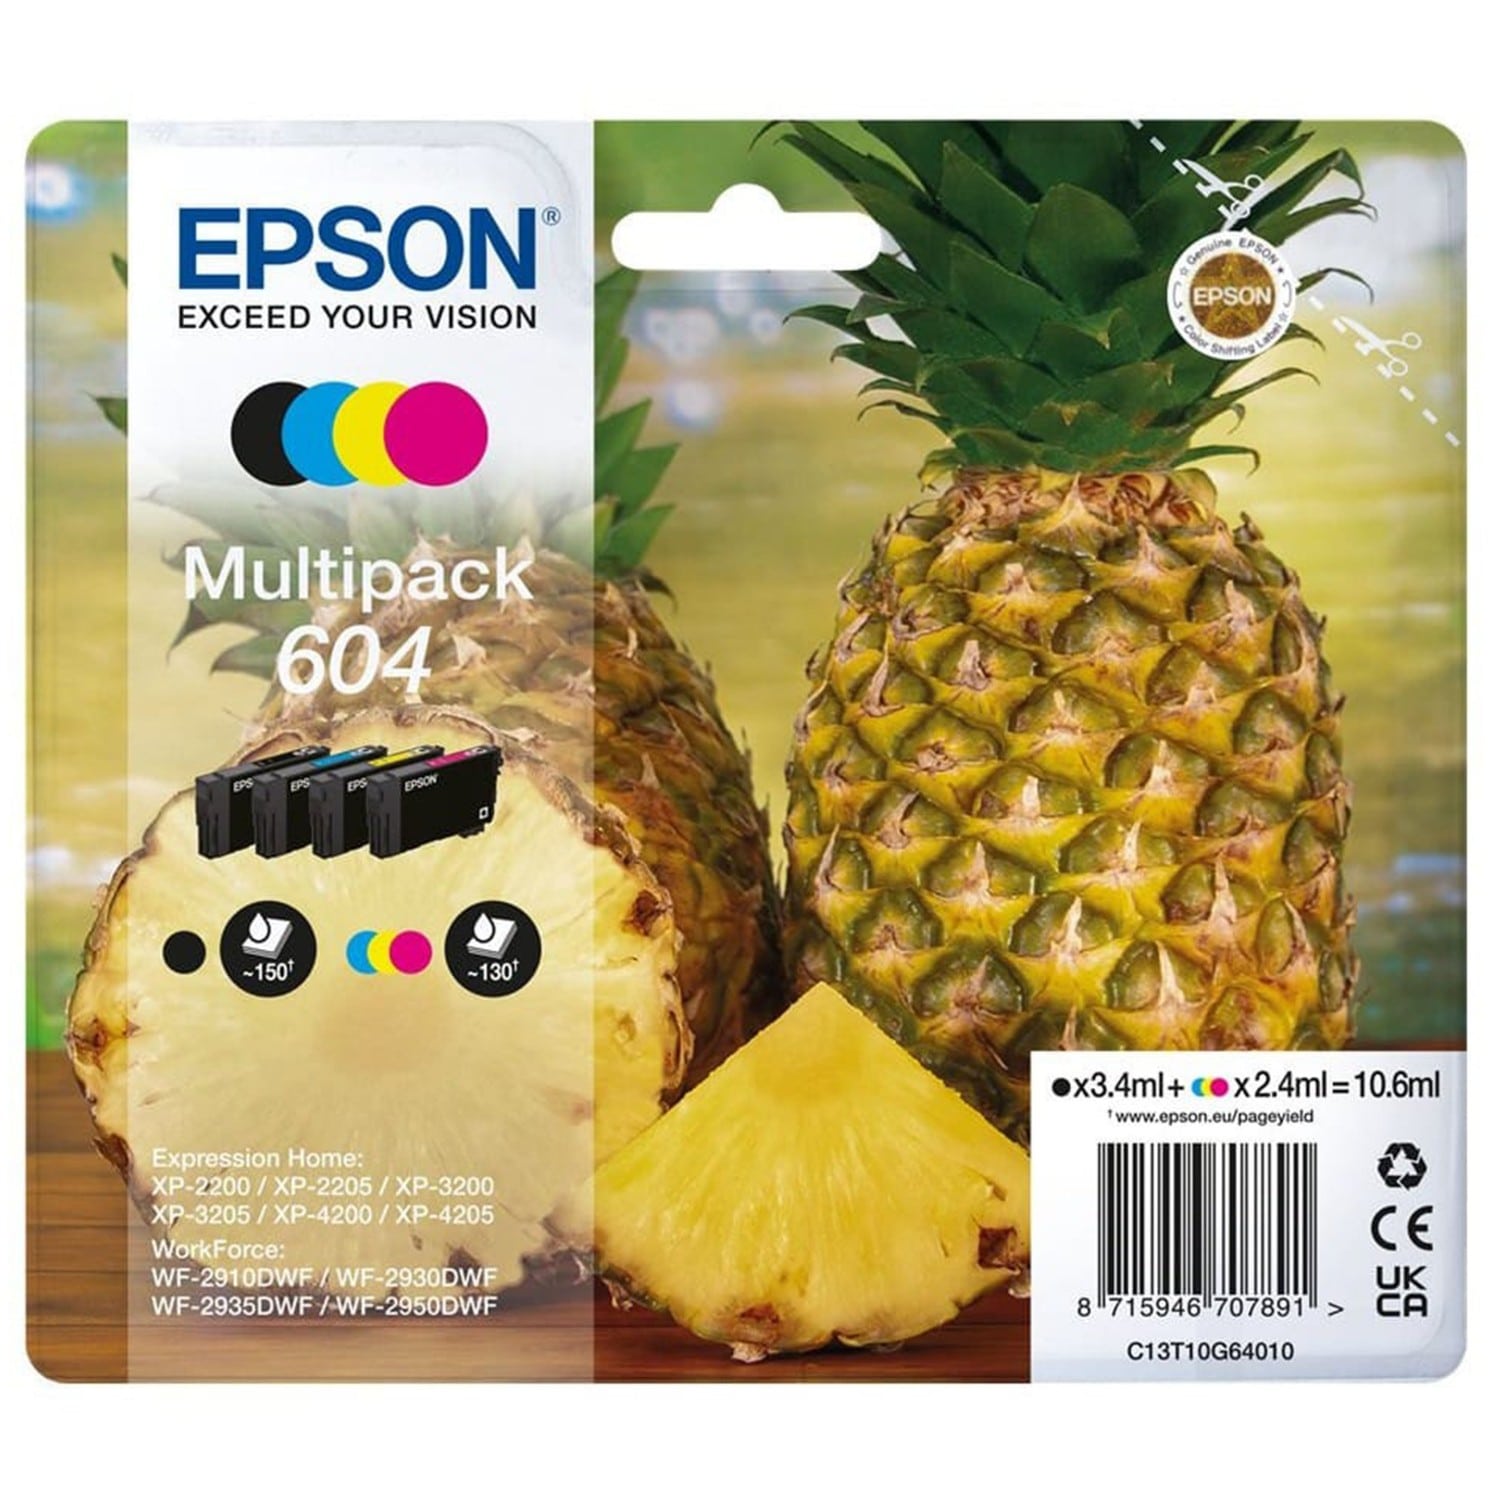 Cartouche d'encre EPSON Ananas 604 pack 4 couleurs pour imprimante XP-4200  (C13T10G64010)